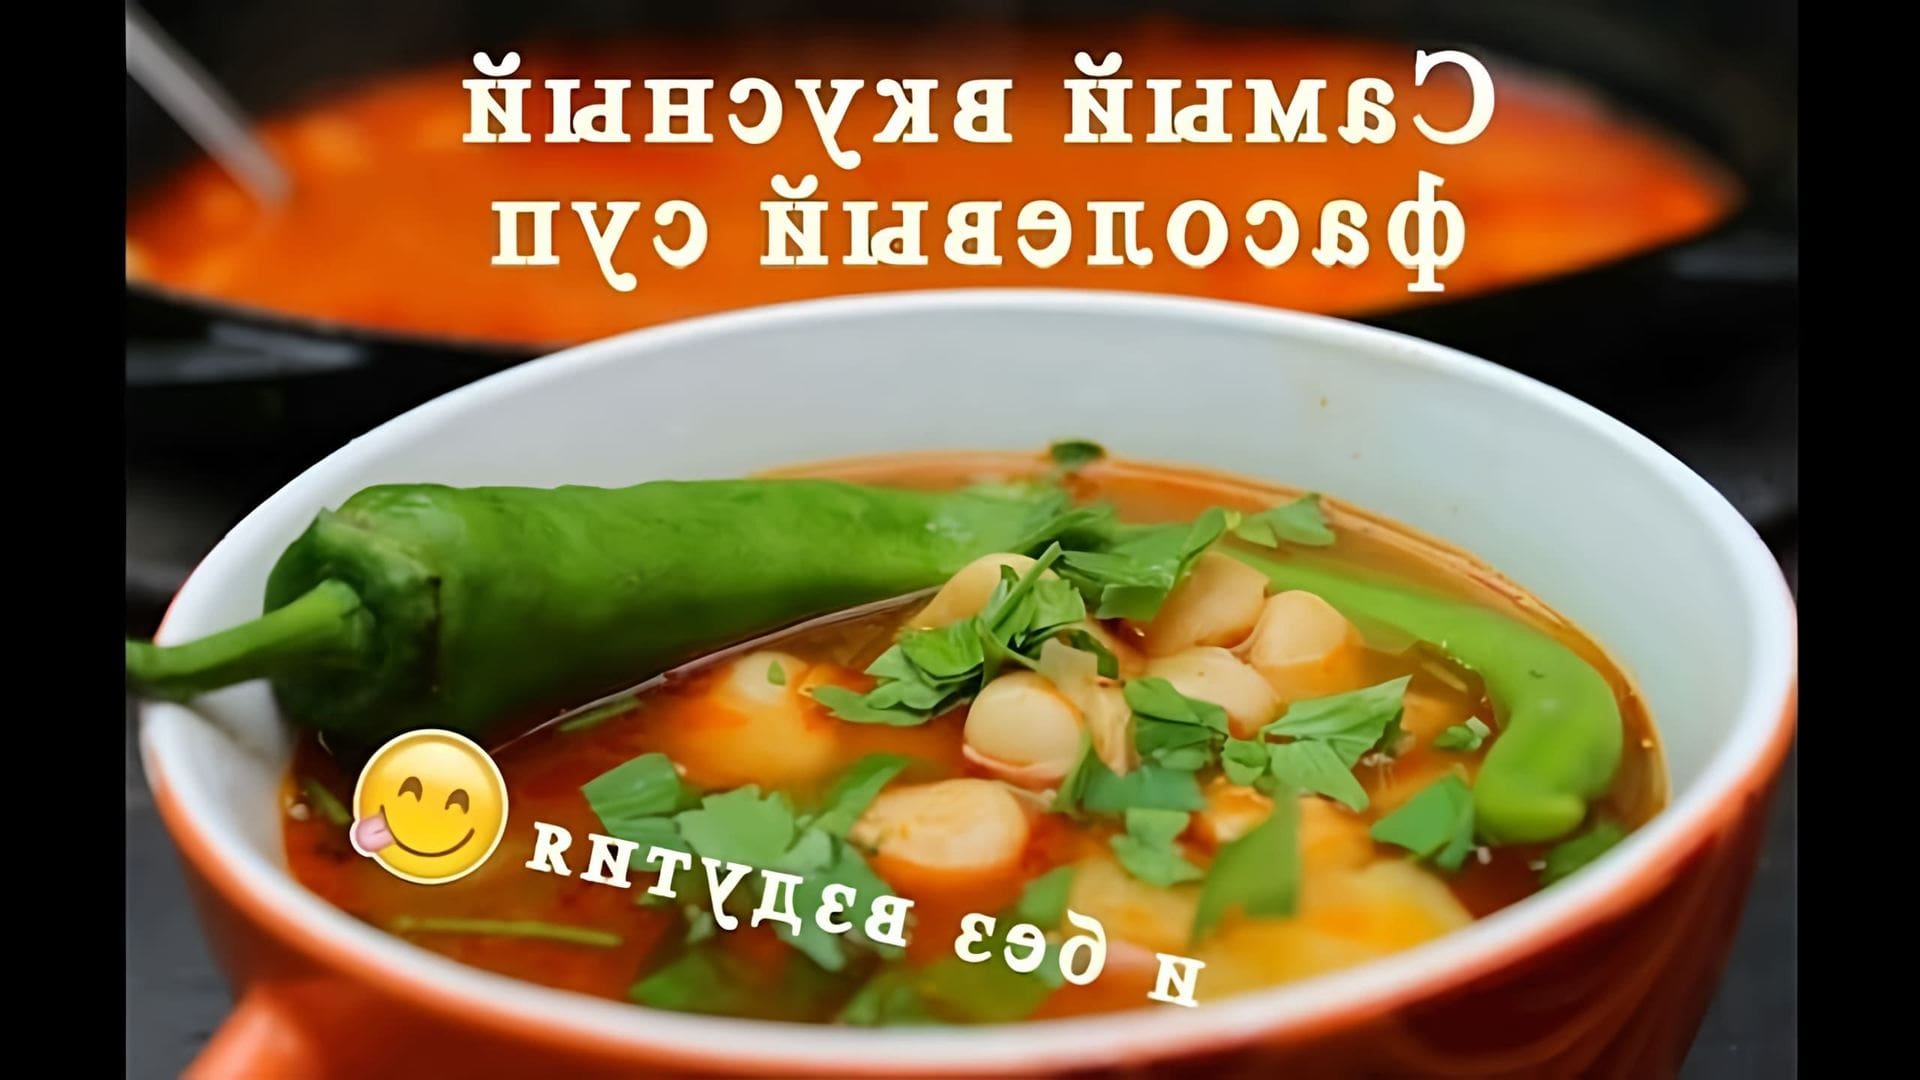 В этом видео показан процесс приготовления вкусного фасолевого супа